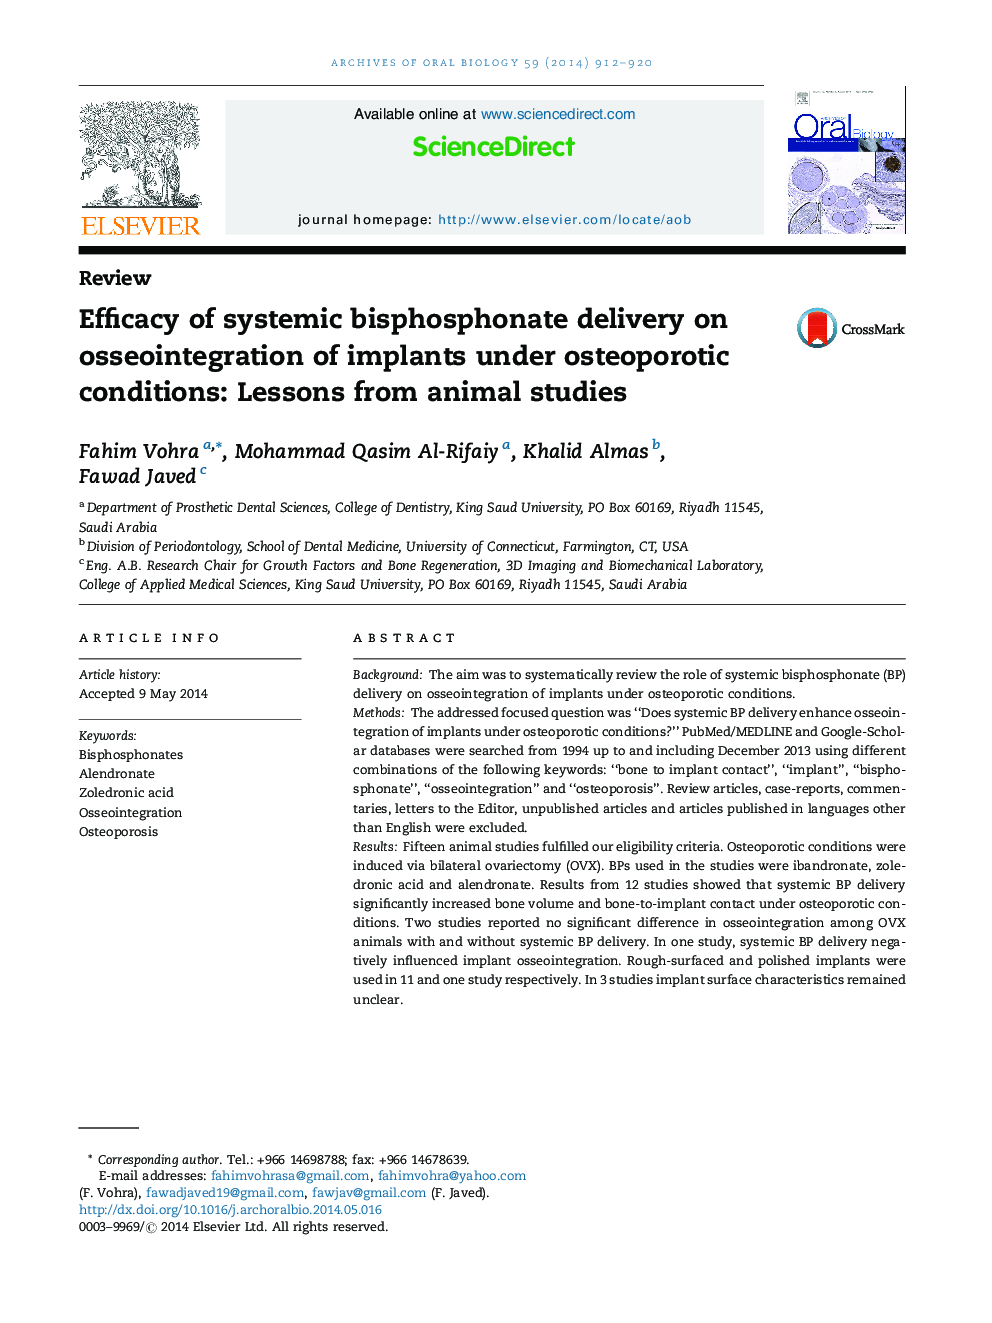 اثربخشی تحویل بیسفسفونات سیستمیک بر استئوپنیوتاسیون اپیلاسیون تحت شرایط استئوپروز: درسهای مطالعات حیوانی 